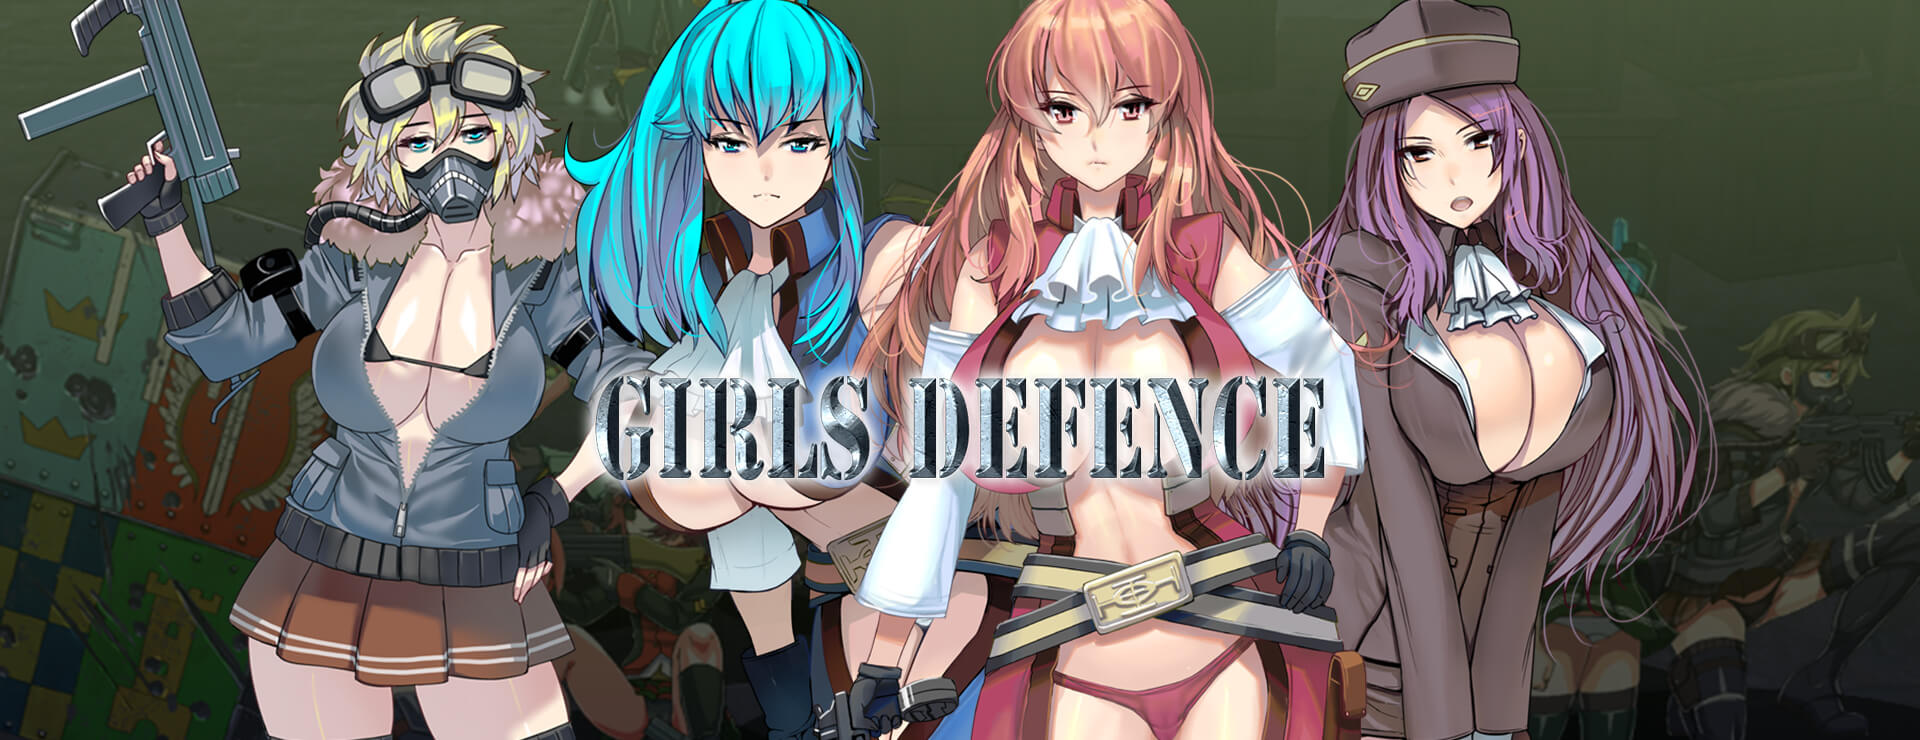 Girls Defence - Aventura Acción Juego